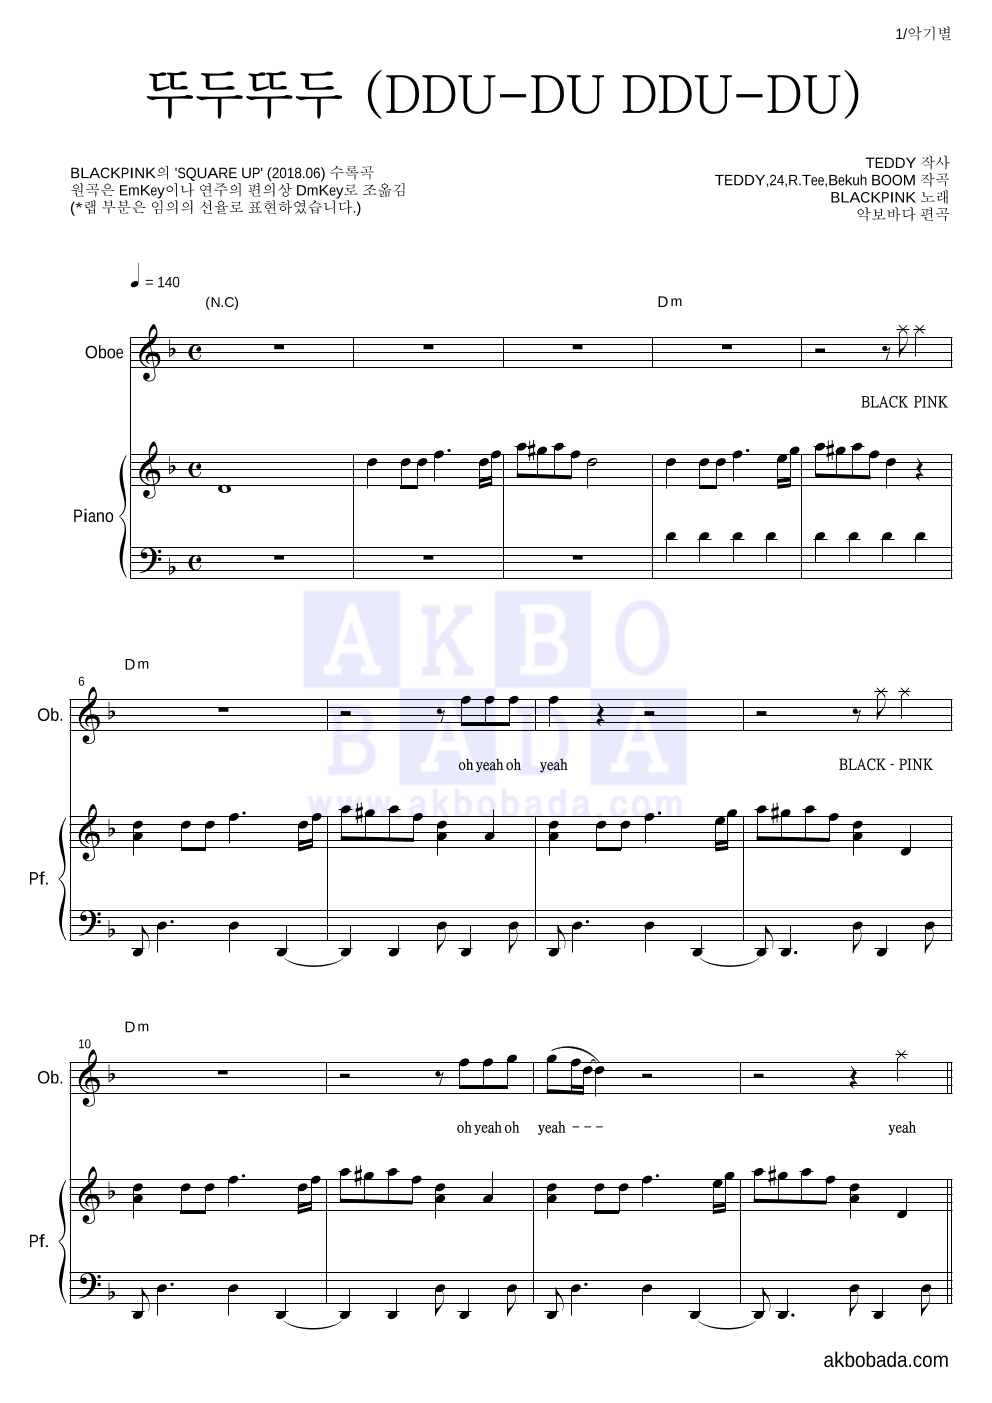 블랙핑크 - 뚜두뚜두 (DDU-DU DDU-DU) 오보에&피아노 악보 